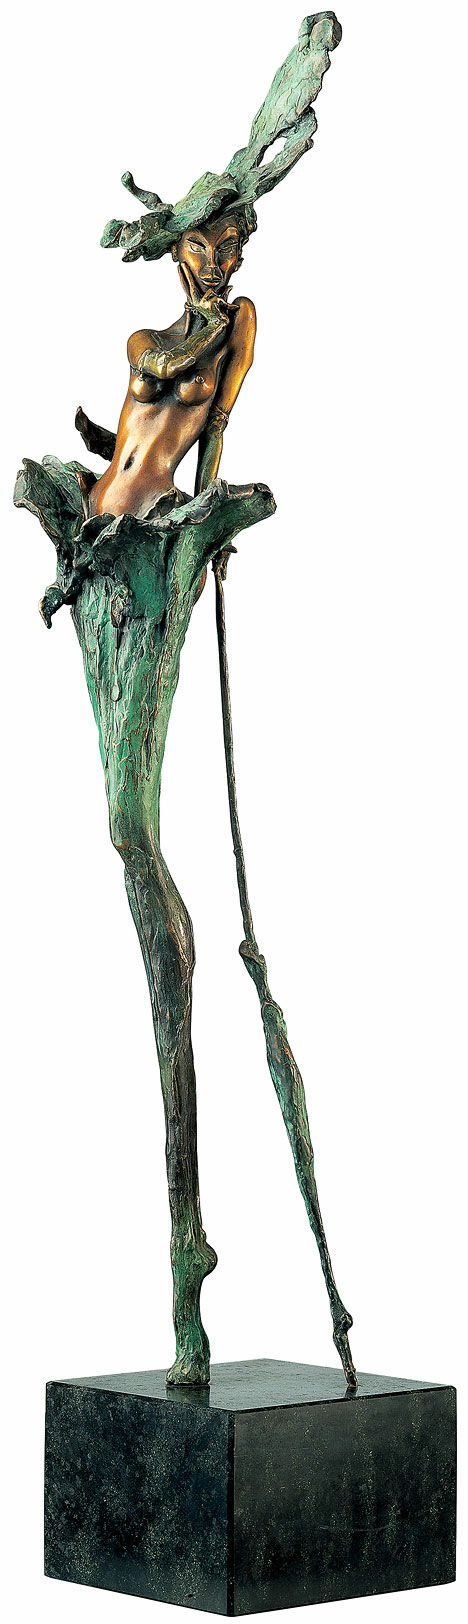 Sculptuur "Als de dame lacht" (1995), brons von Marc van Megen